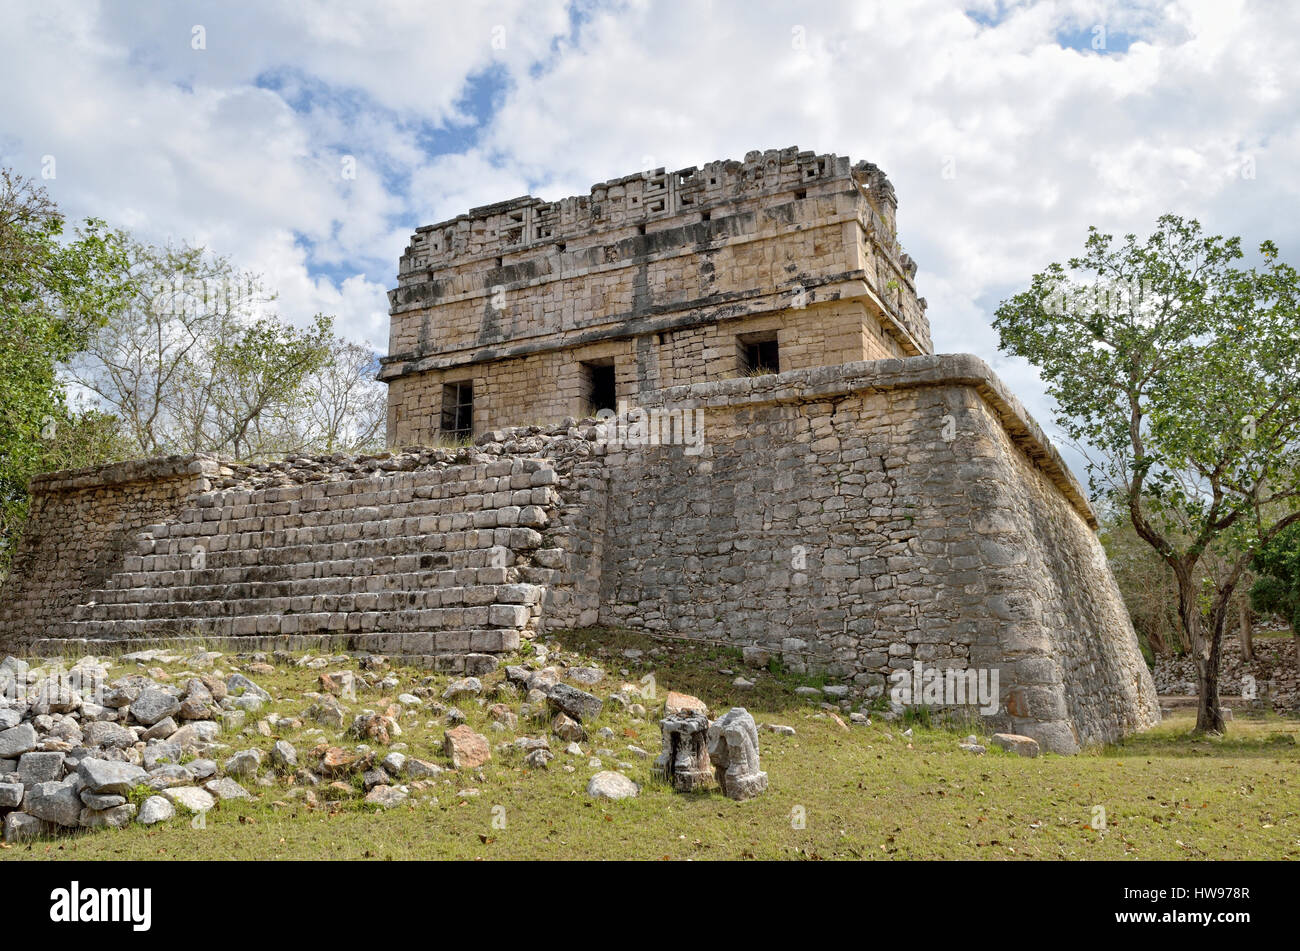 Casa Colorada, Red House, historic Mayan city of Chichen Itza, Piste, Yucatan, Mexico Stock Photo